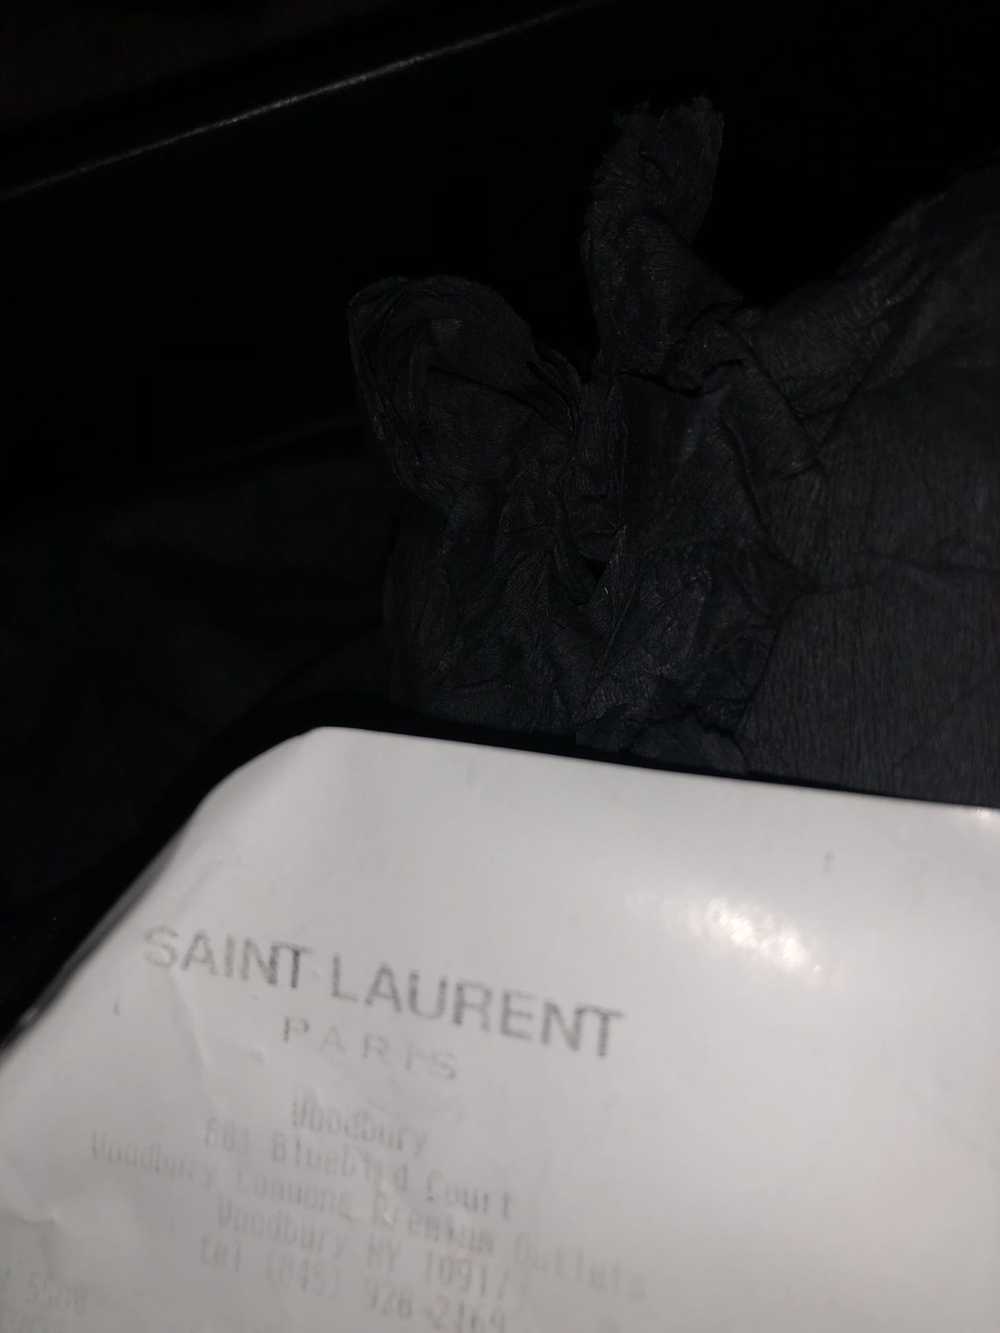 Saint Laurent Paris Saint Laurent Paris - image 5